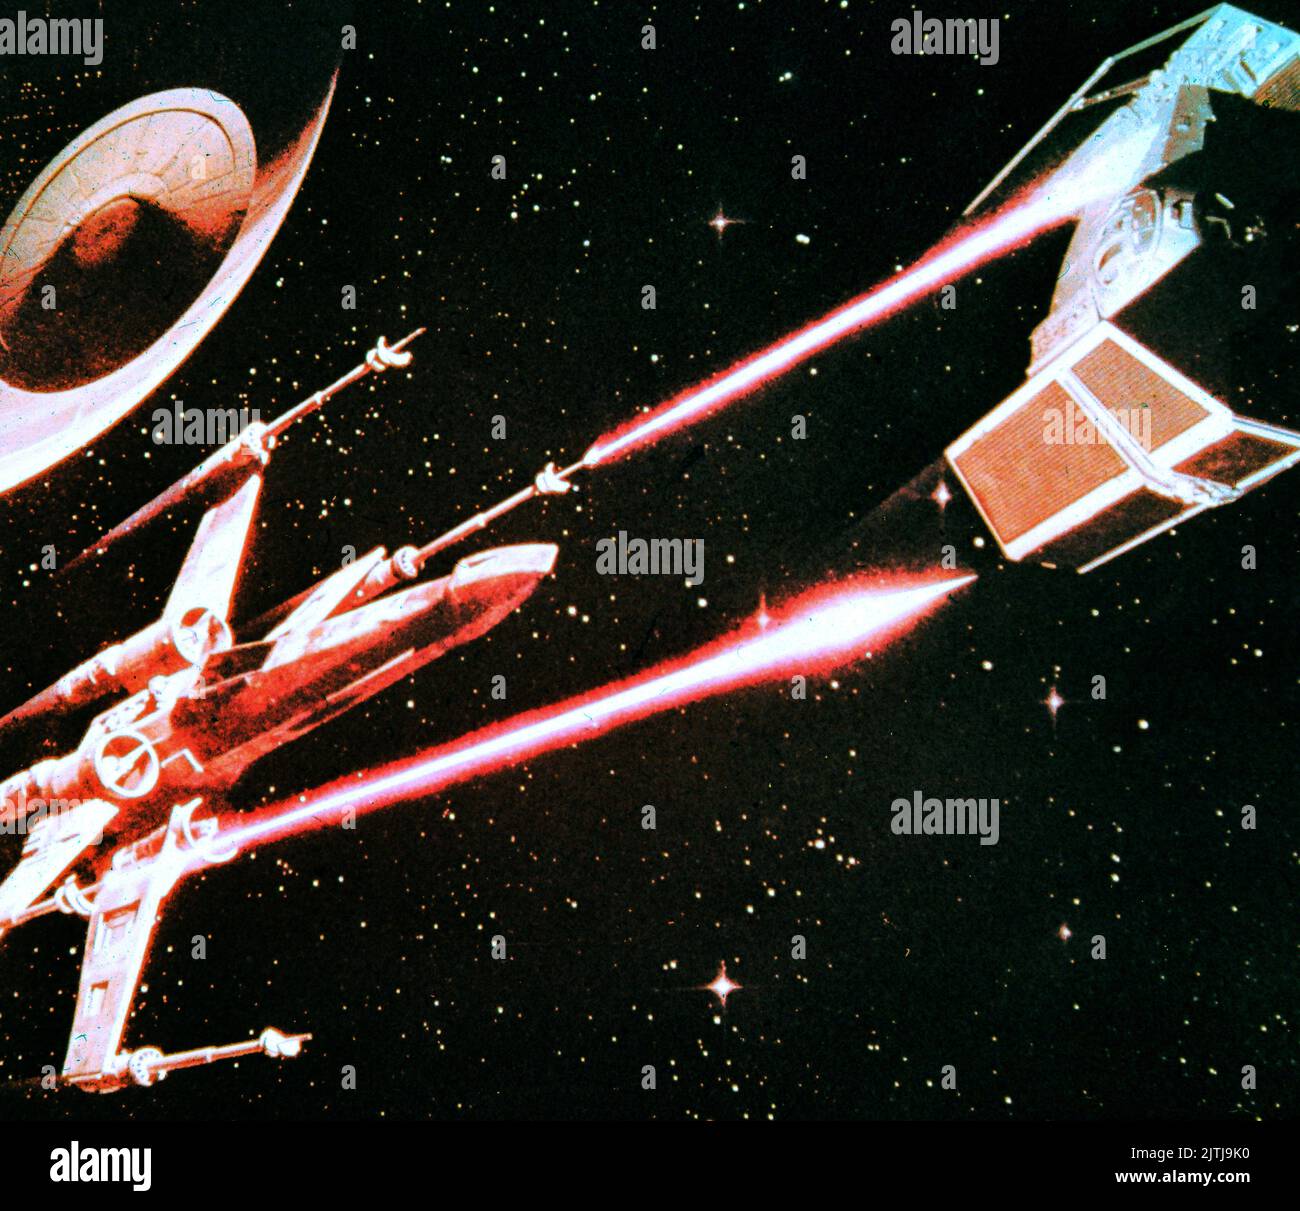 Star Wars, aka Krieg der Sterne, USA 1977, Regie: George Lucas, Raumschiff im Weltall Stock Photo